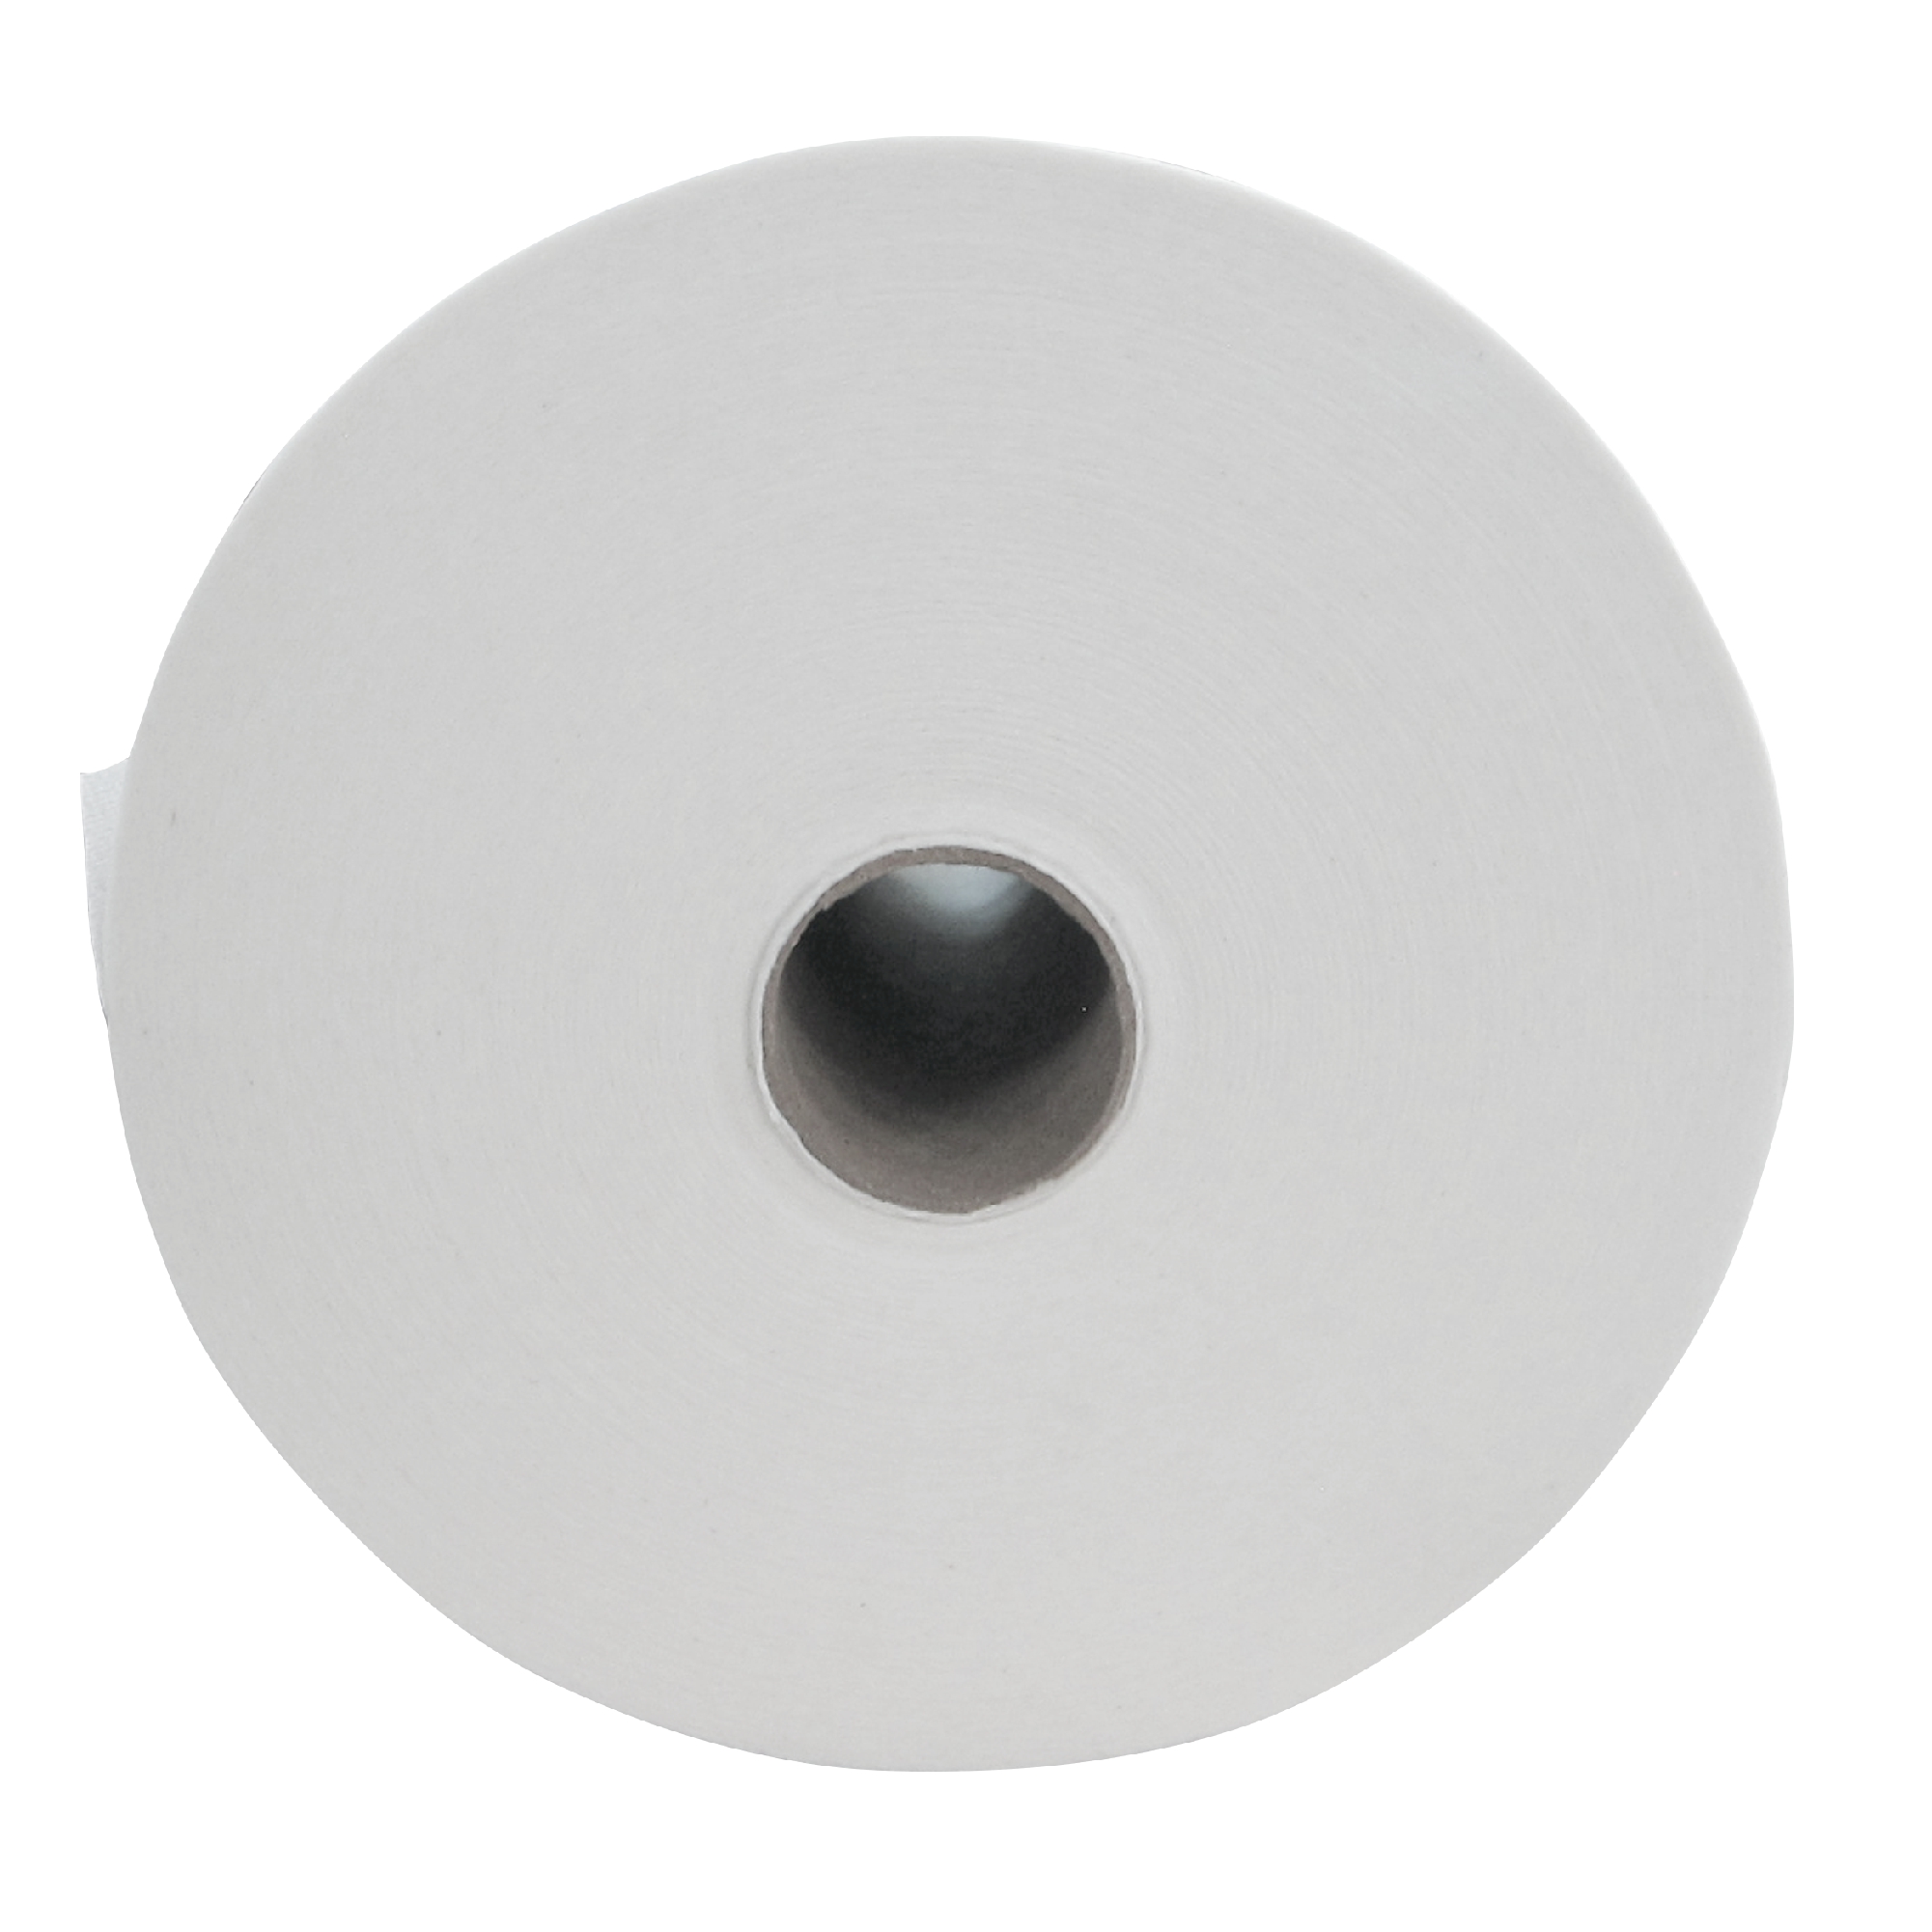 Greymoon 200-25 sistema AD-200 toalla en rollo color blanca hoja sencilla institucional, caja con 6 rollos de 213 mts cada uno